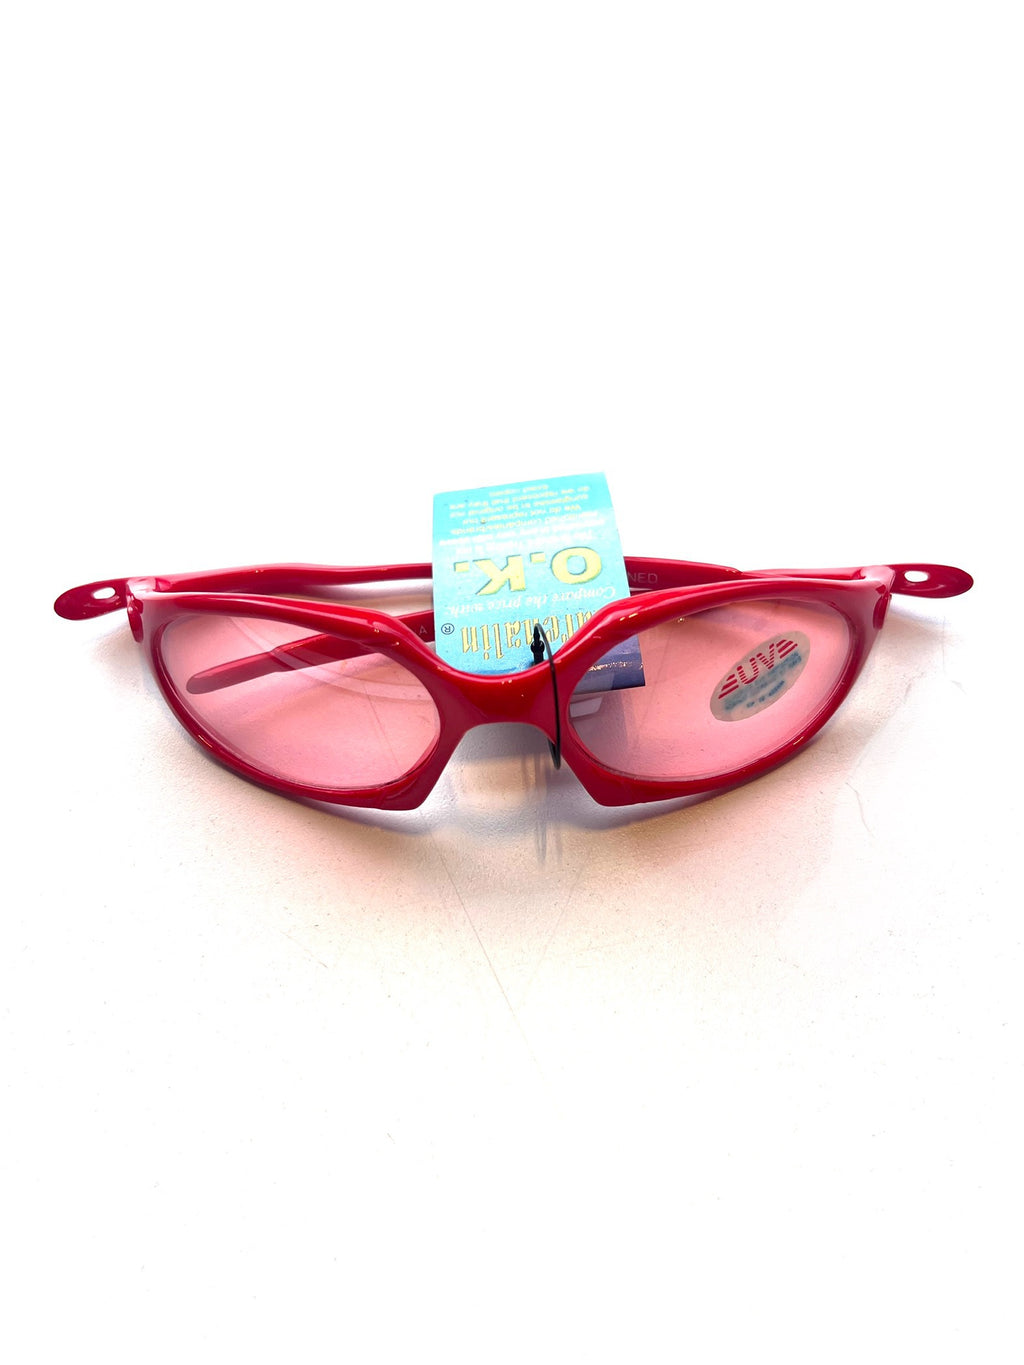 Cherry Red Wrap Around Sunglasses